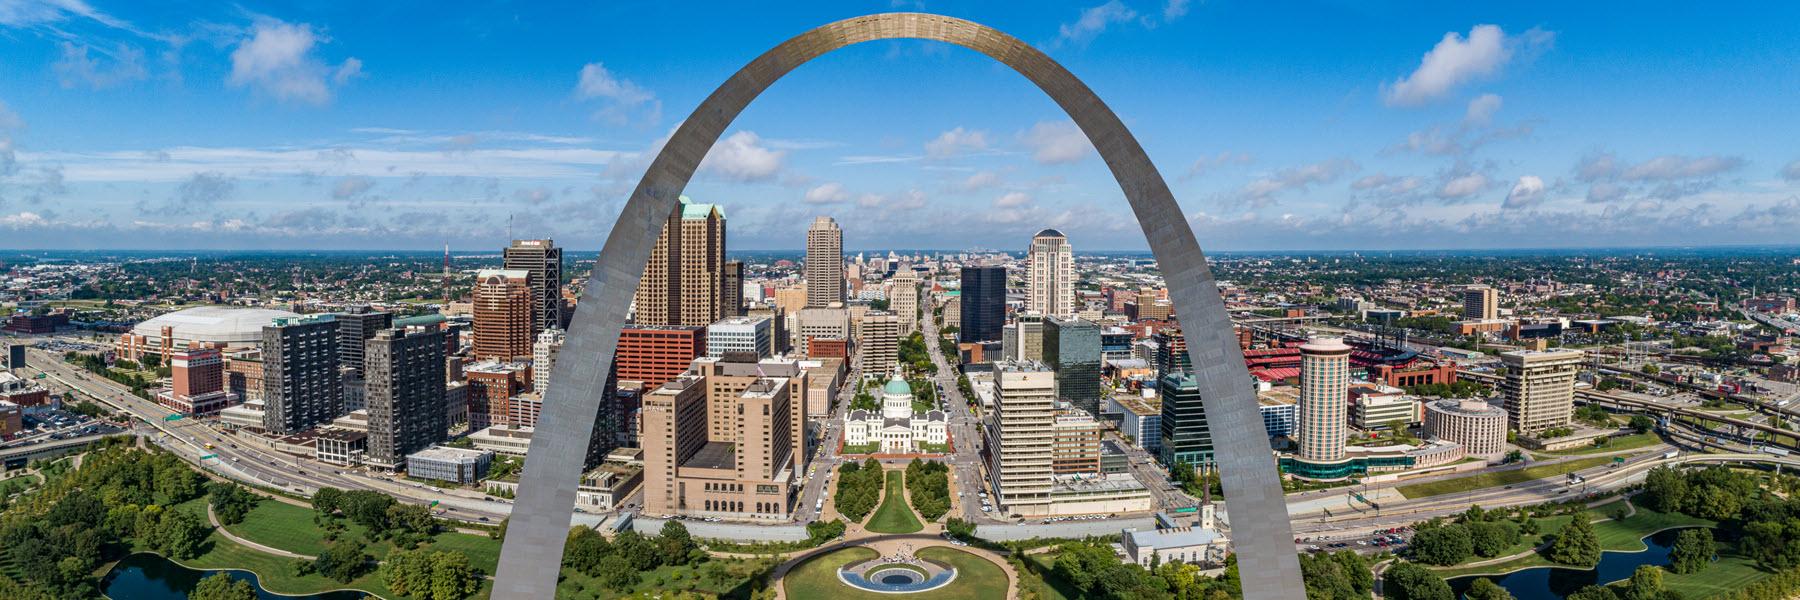 Explore St. Louis Events